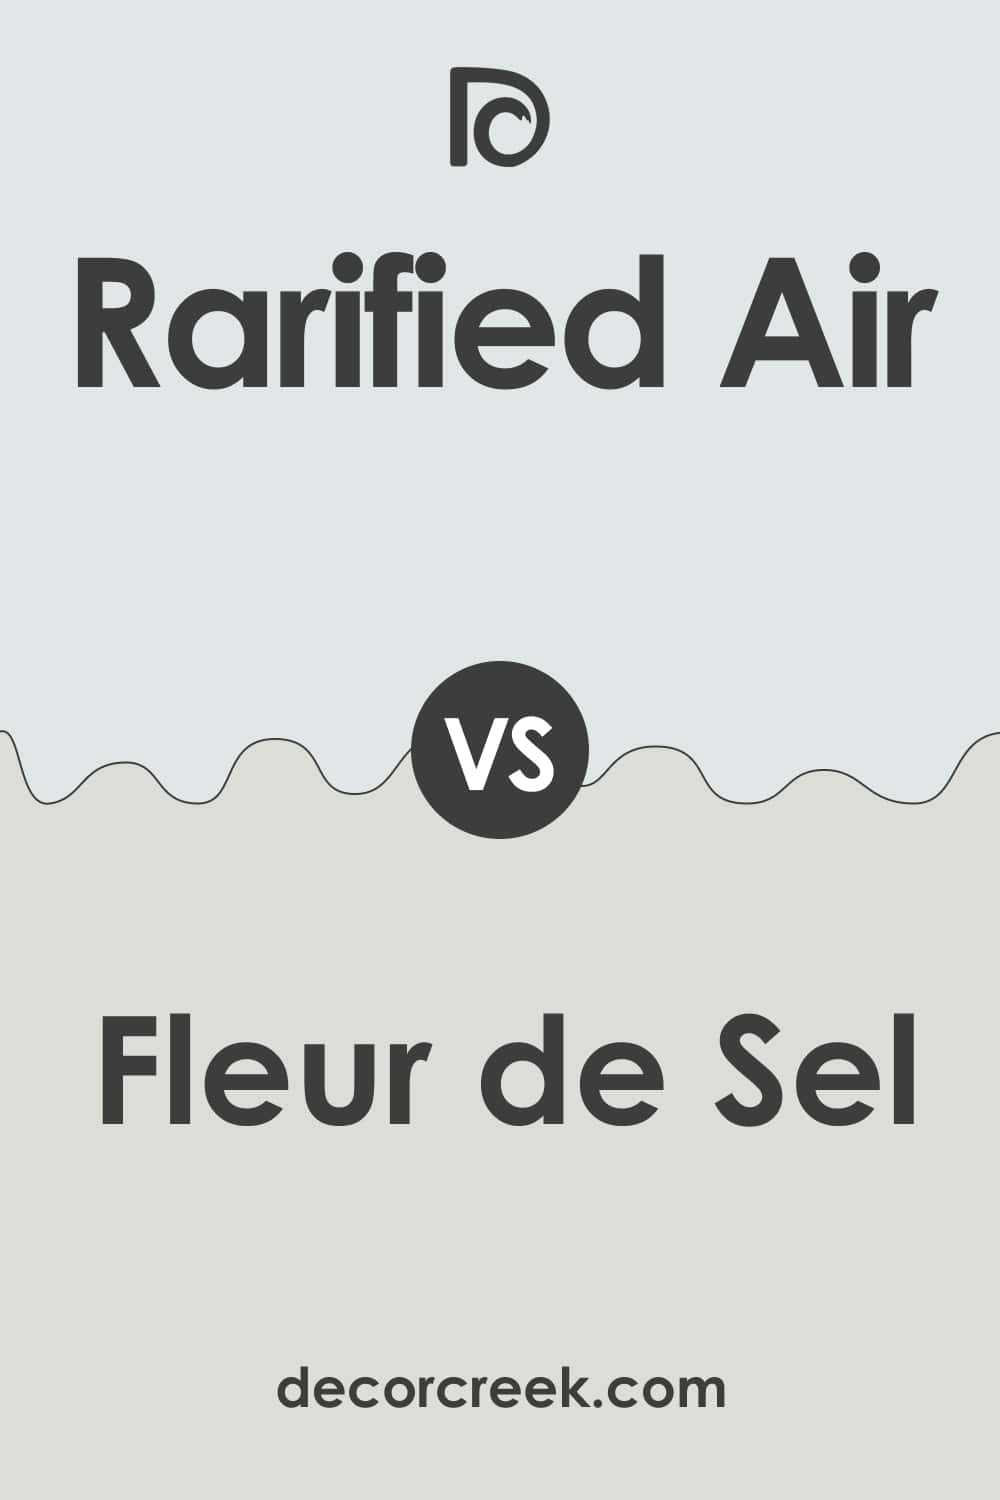 Rarified Air vs Fleur de Sel